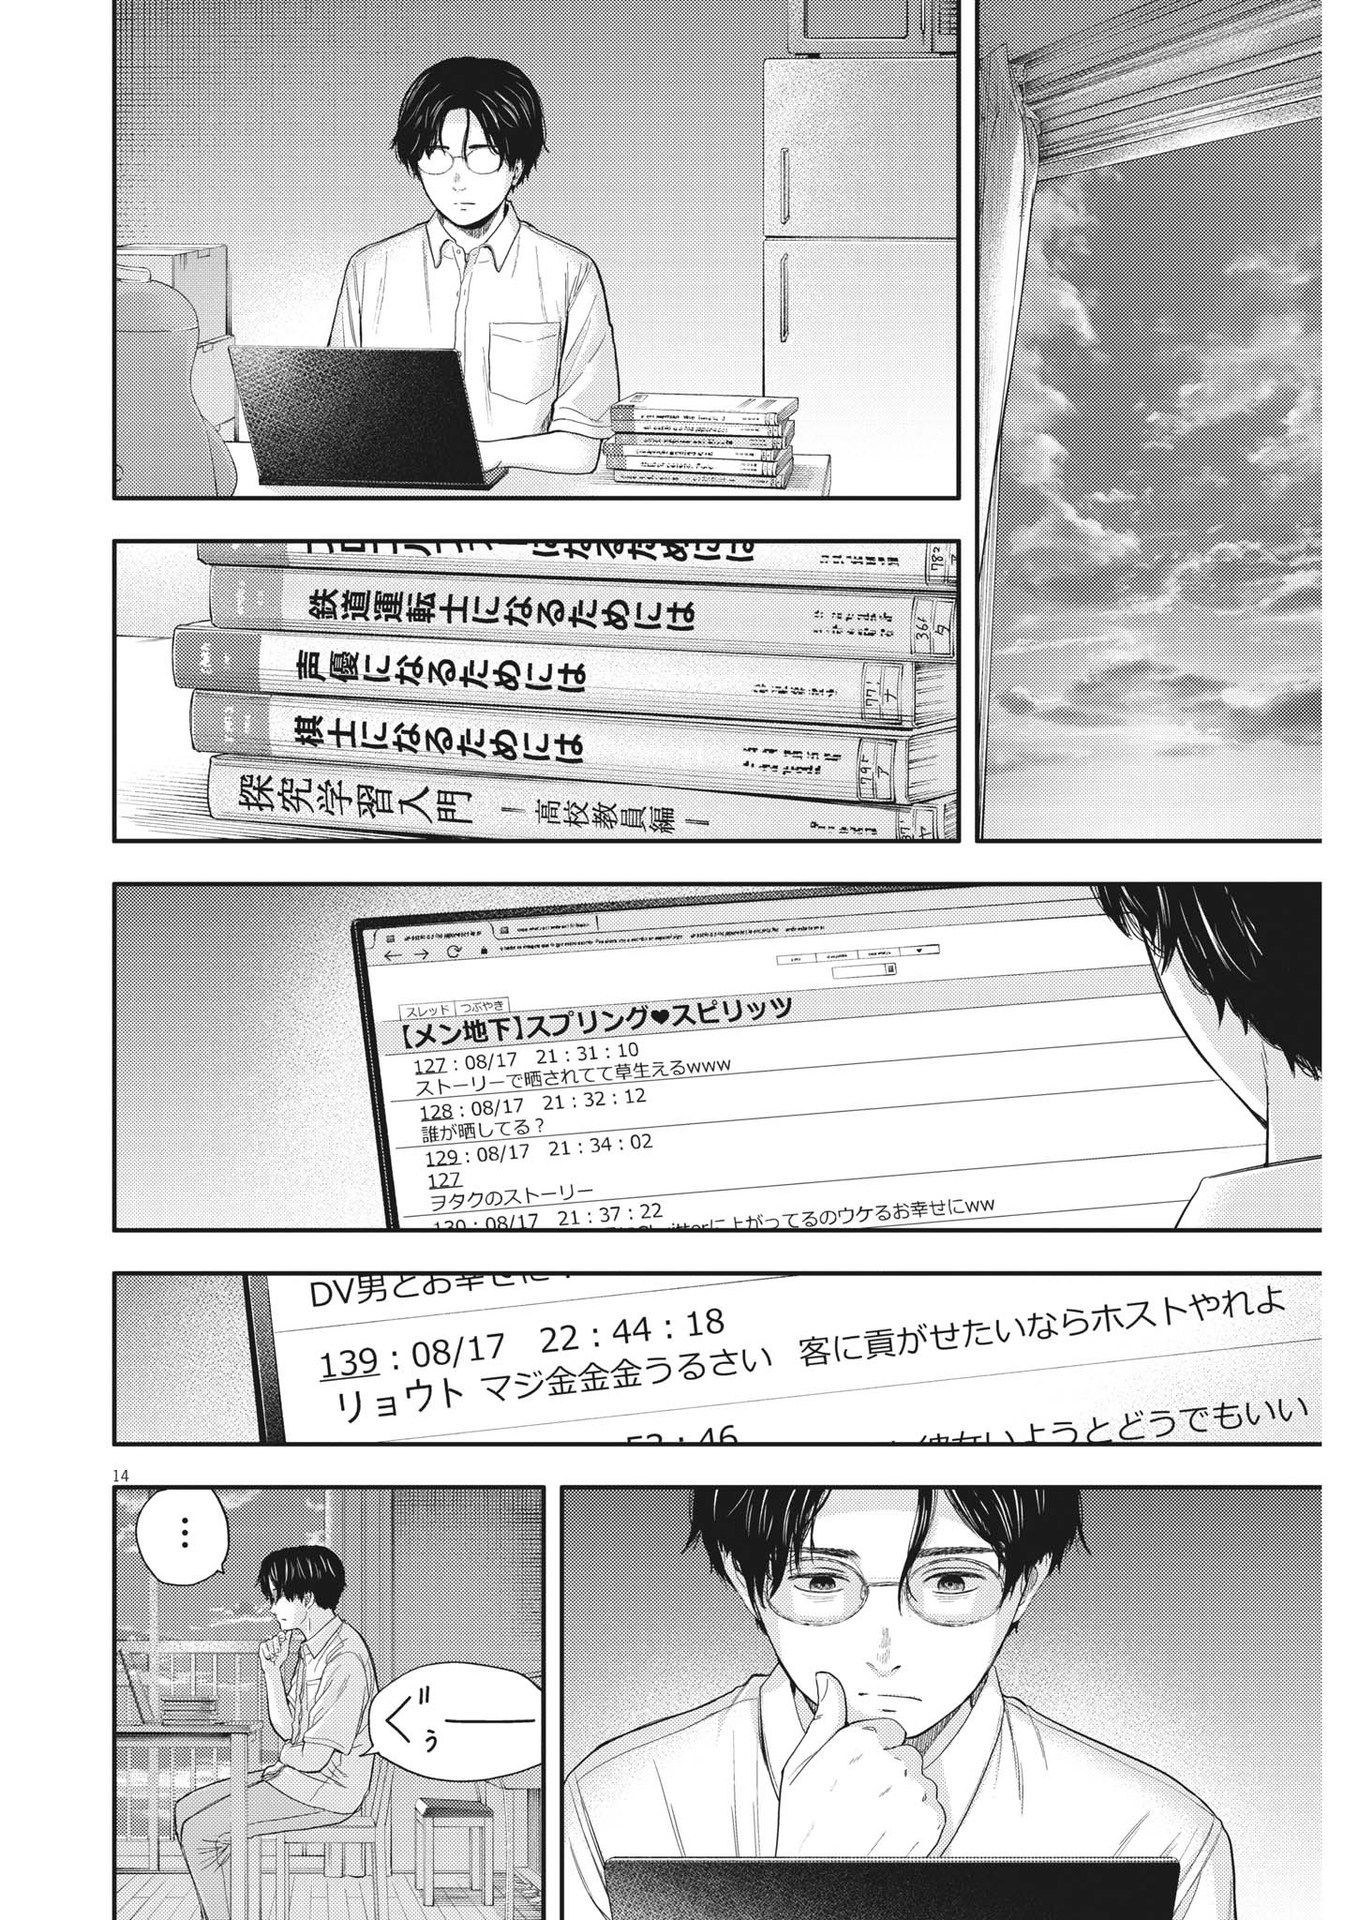 Yumenashi-sensei no Shinroshidou - Chapter 13 - Page 14